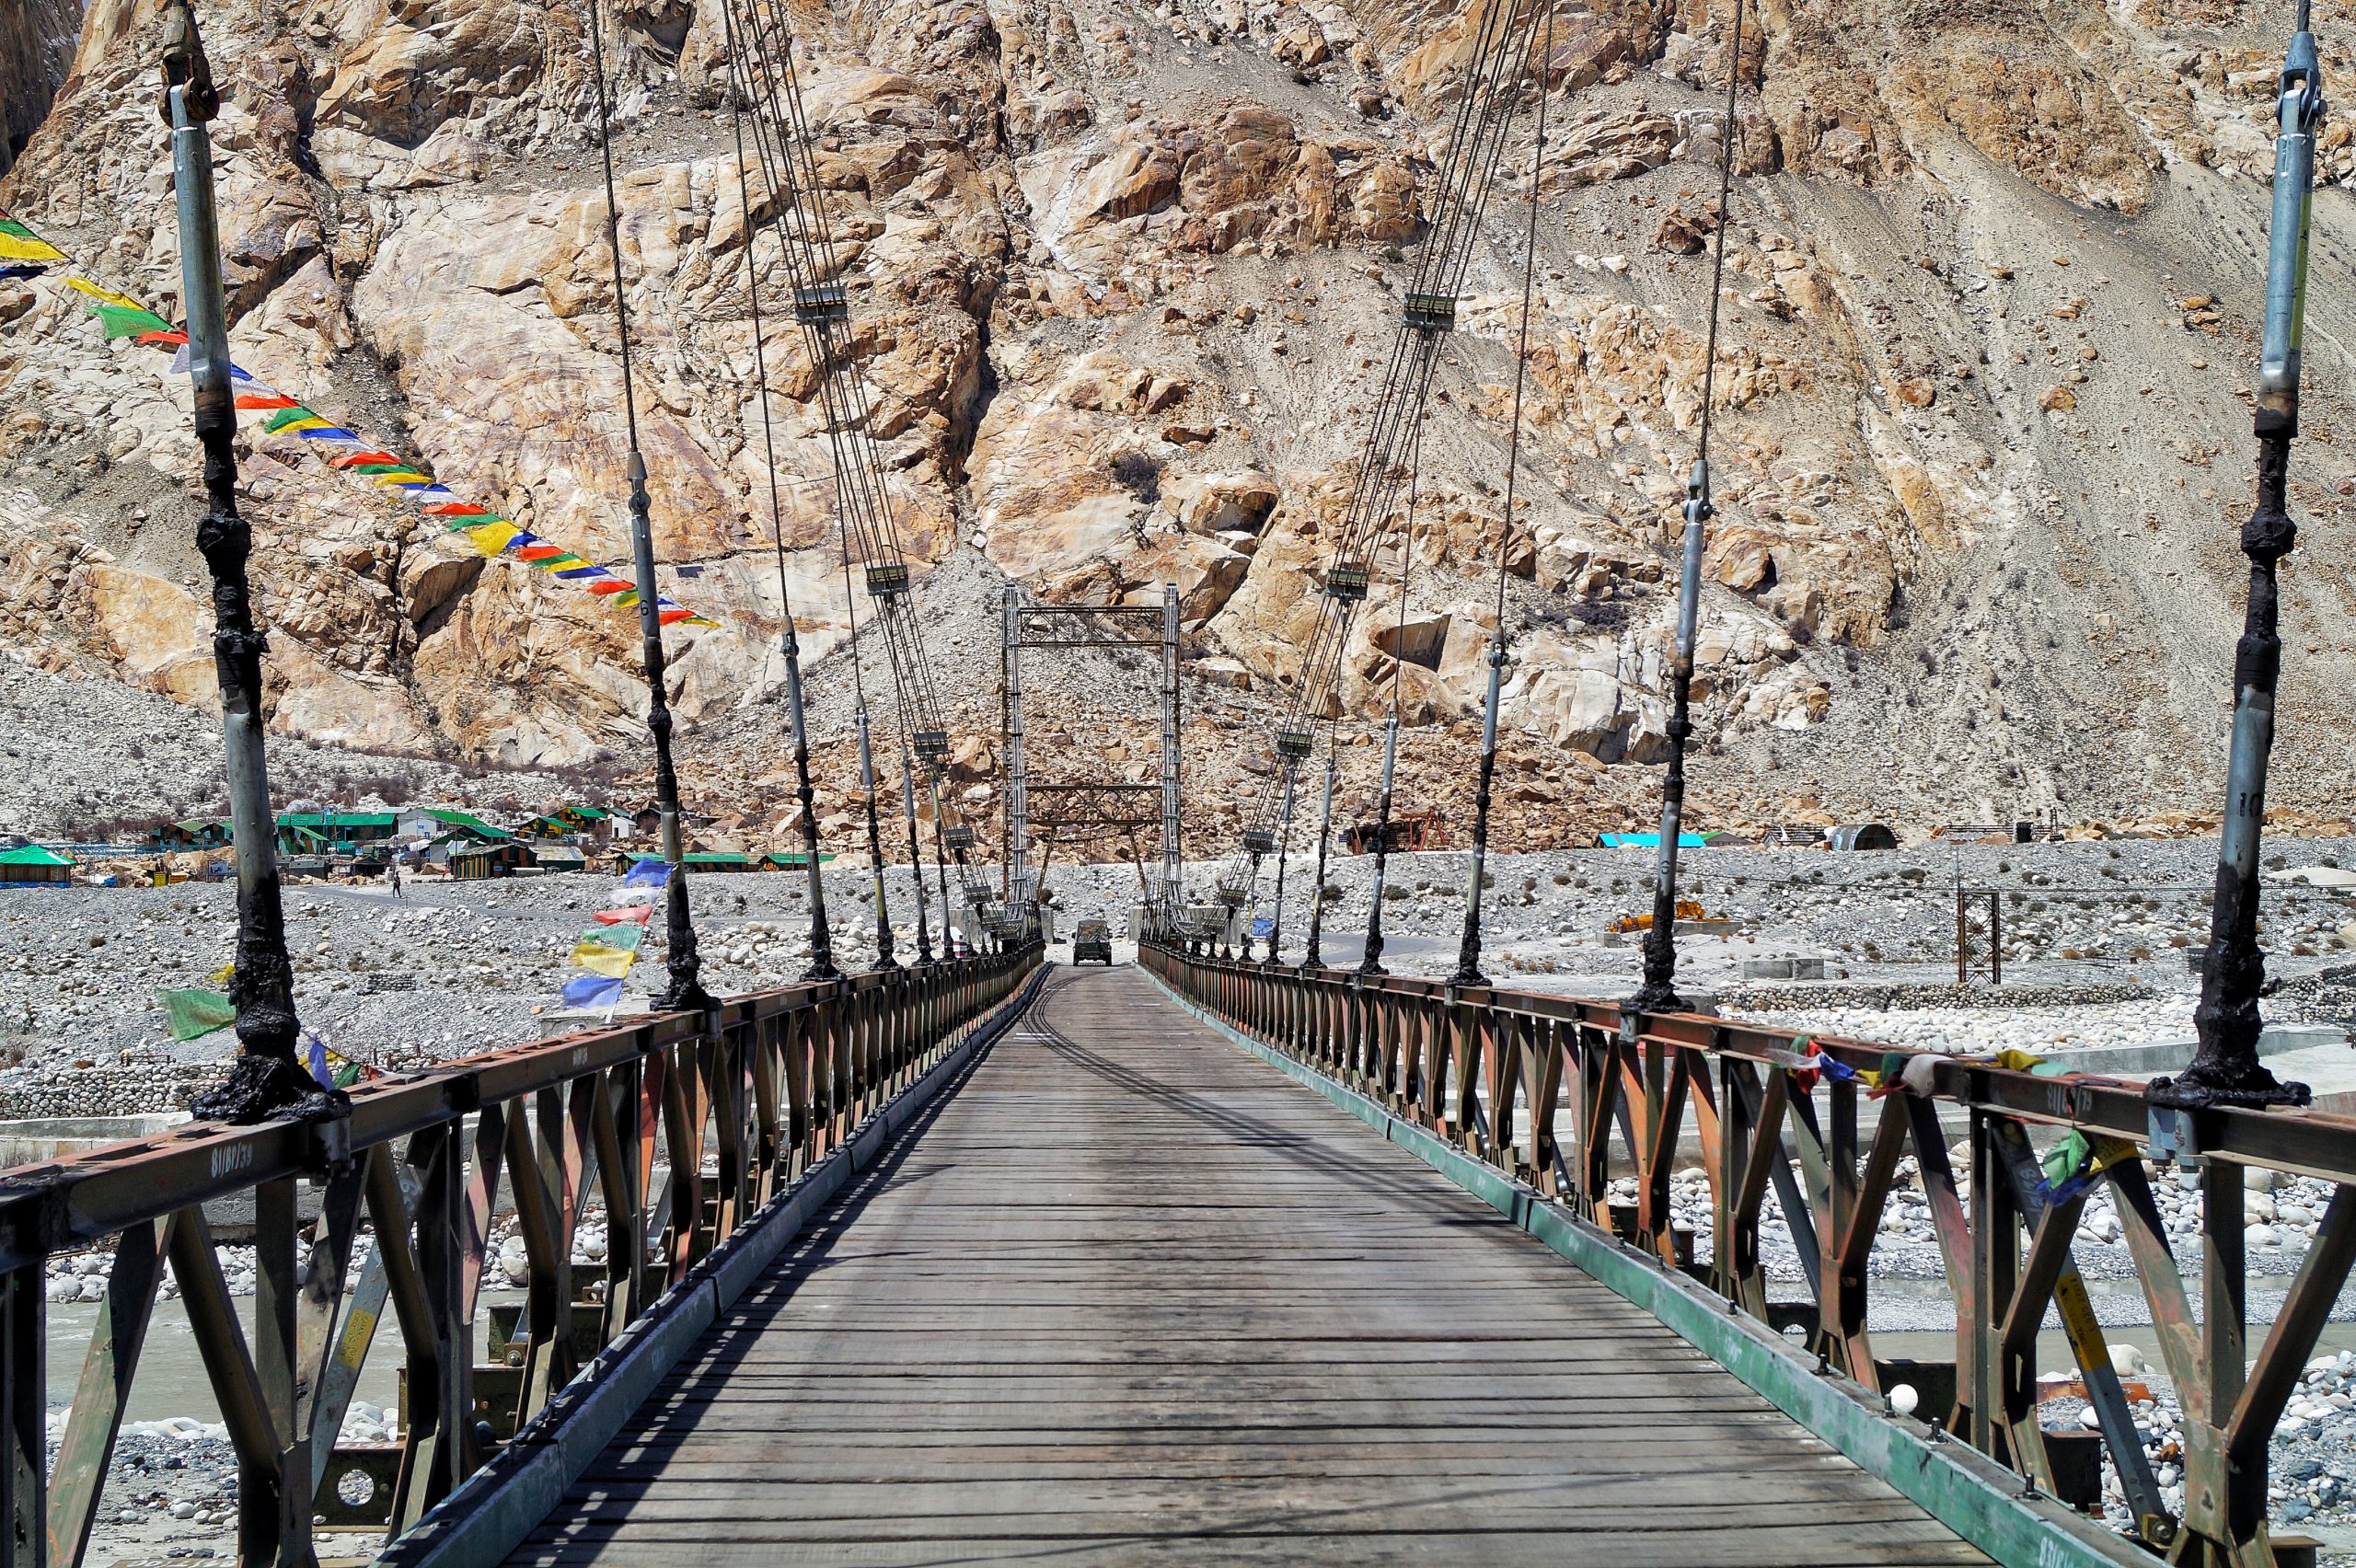 Connecting Bridge in Leh